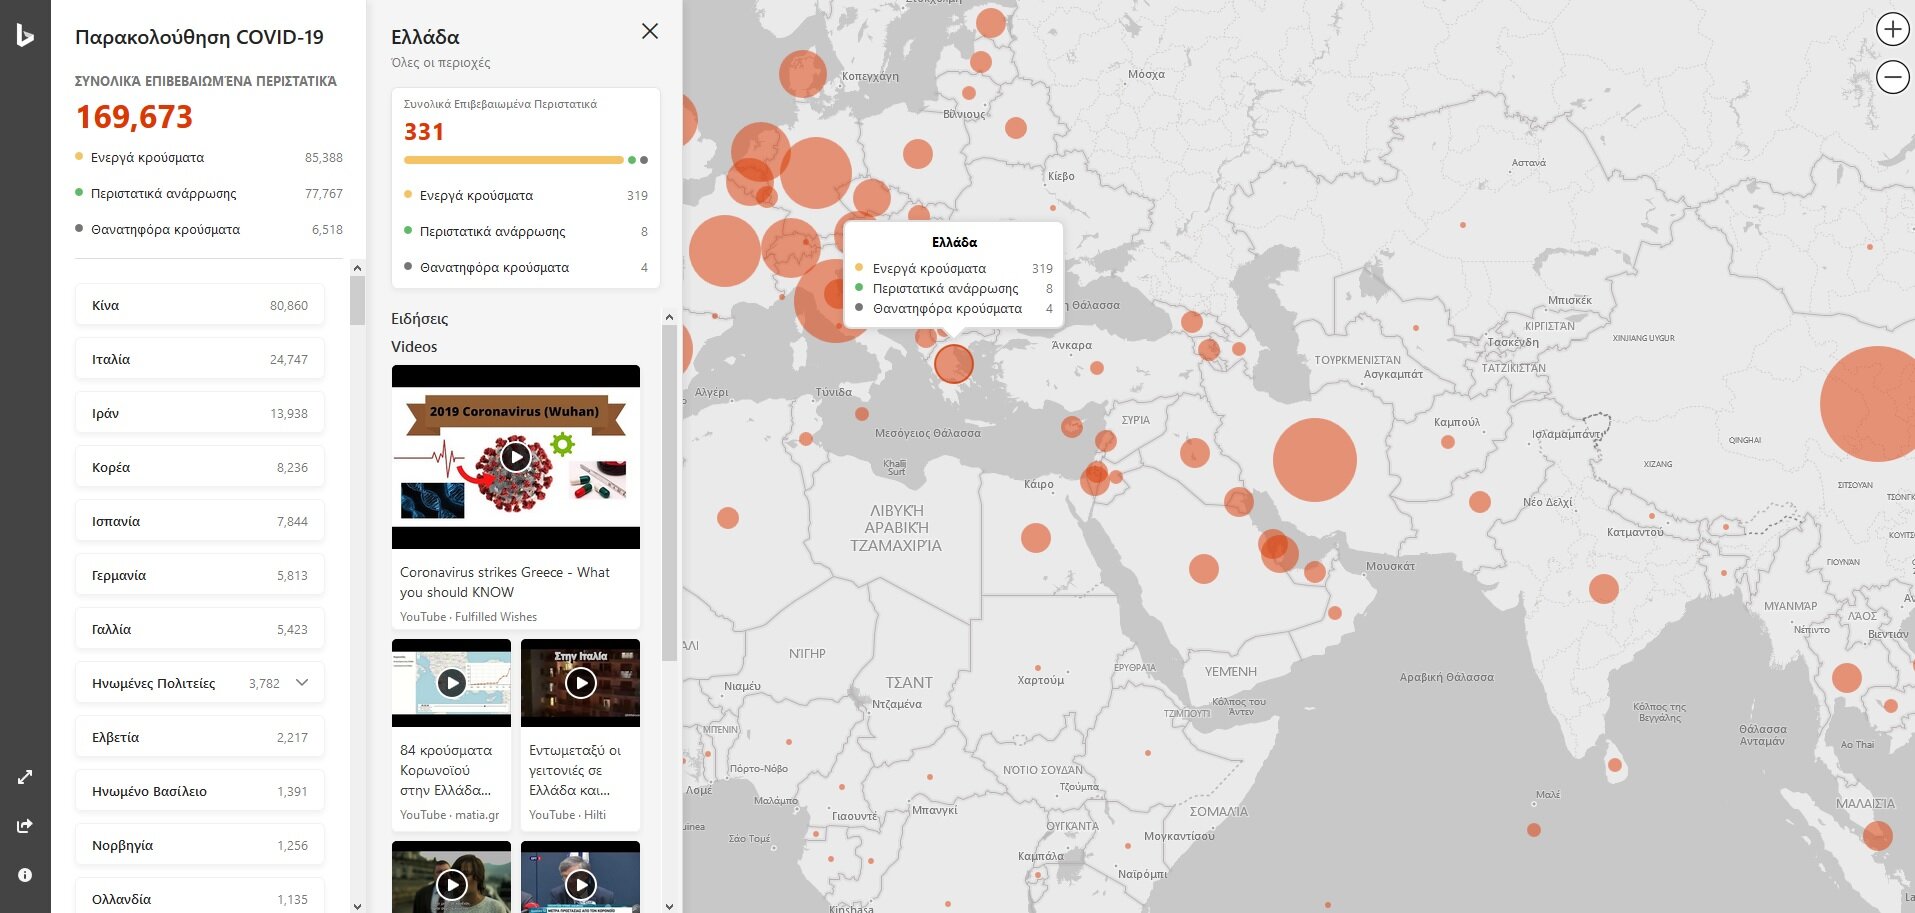 Η Microsoft δημιούργησε ένα νέο διαδραστικό χάρτη για την εξάπλωση του κορωνοϊού